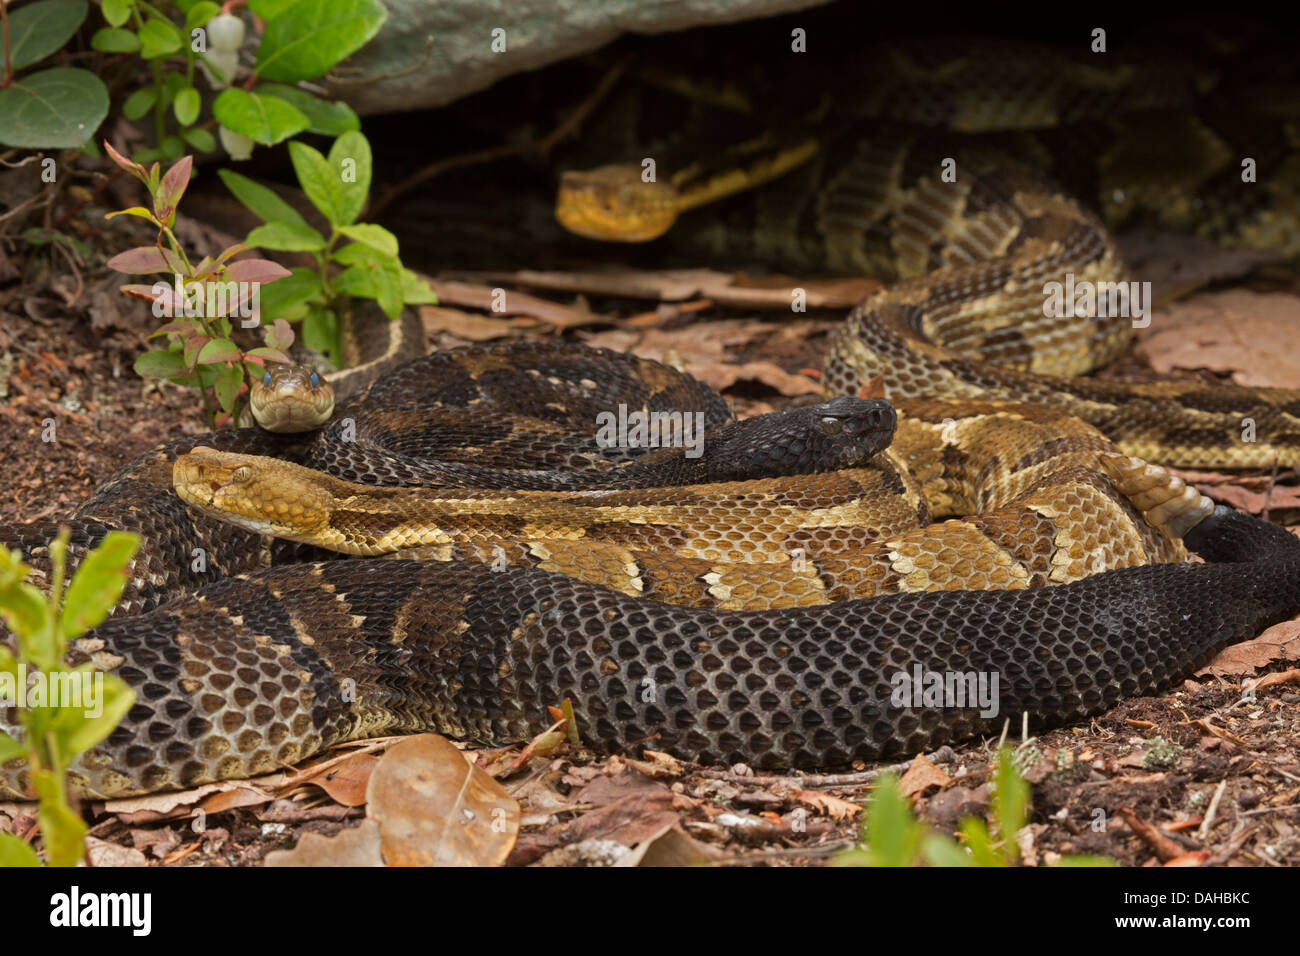 Timber rattlesnakes, Crotalus horridus, Pennsylvania, Gravid females, common gartersnake Thamnophis sirtalis among rattlesnakes Stock Photo